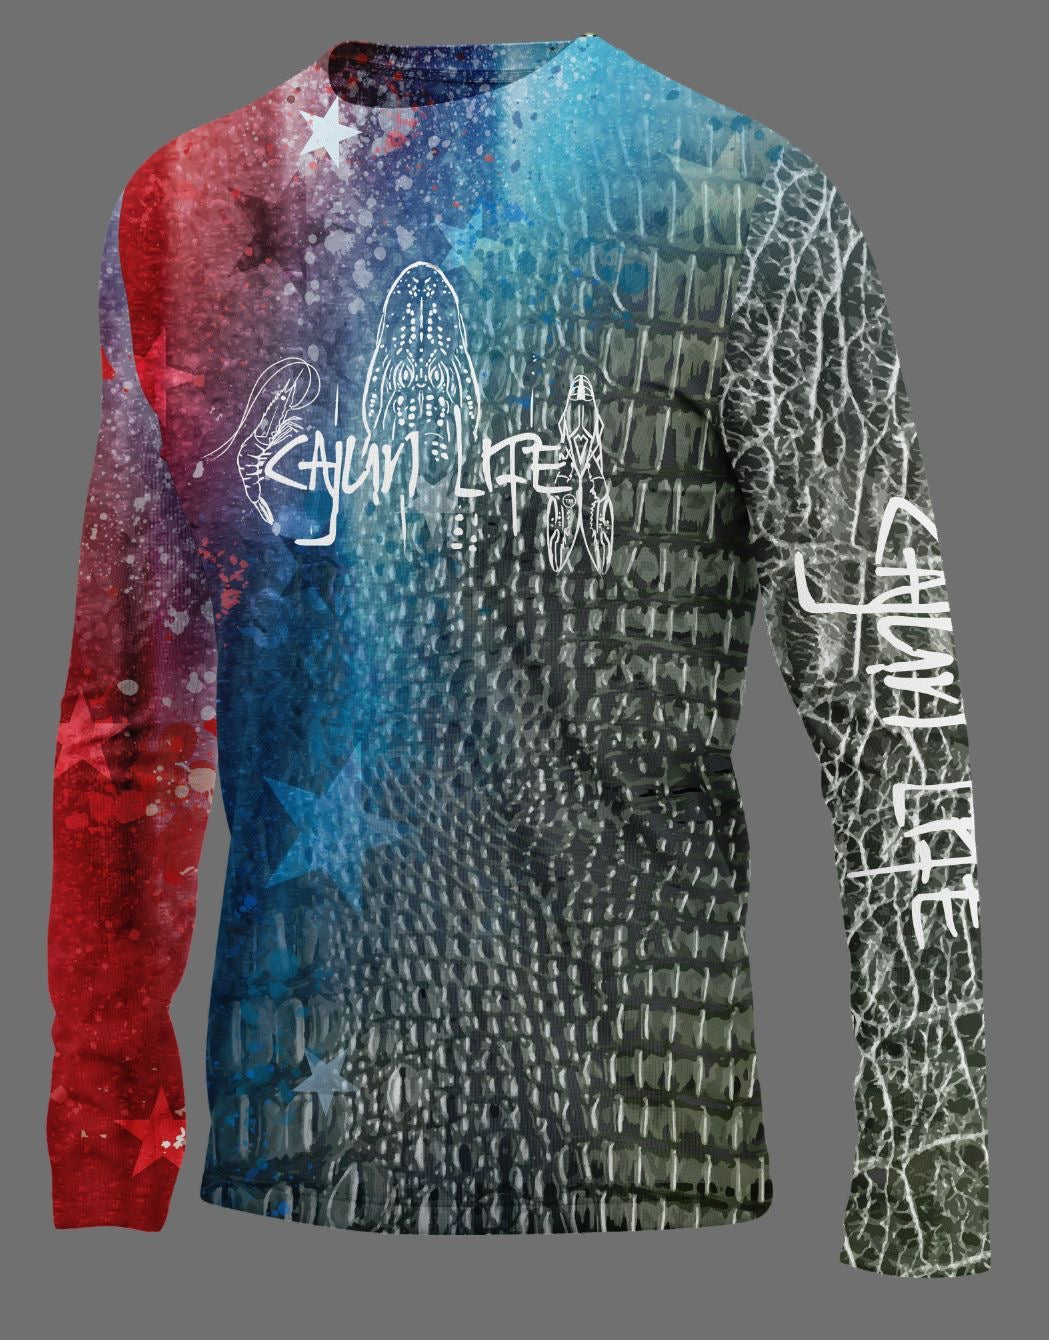 CAJUN LIFE (PSYCHEDELICAJUN) long sleeve shirt (size XXXL - XXXXL)